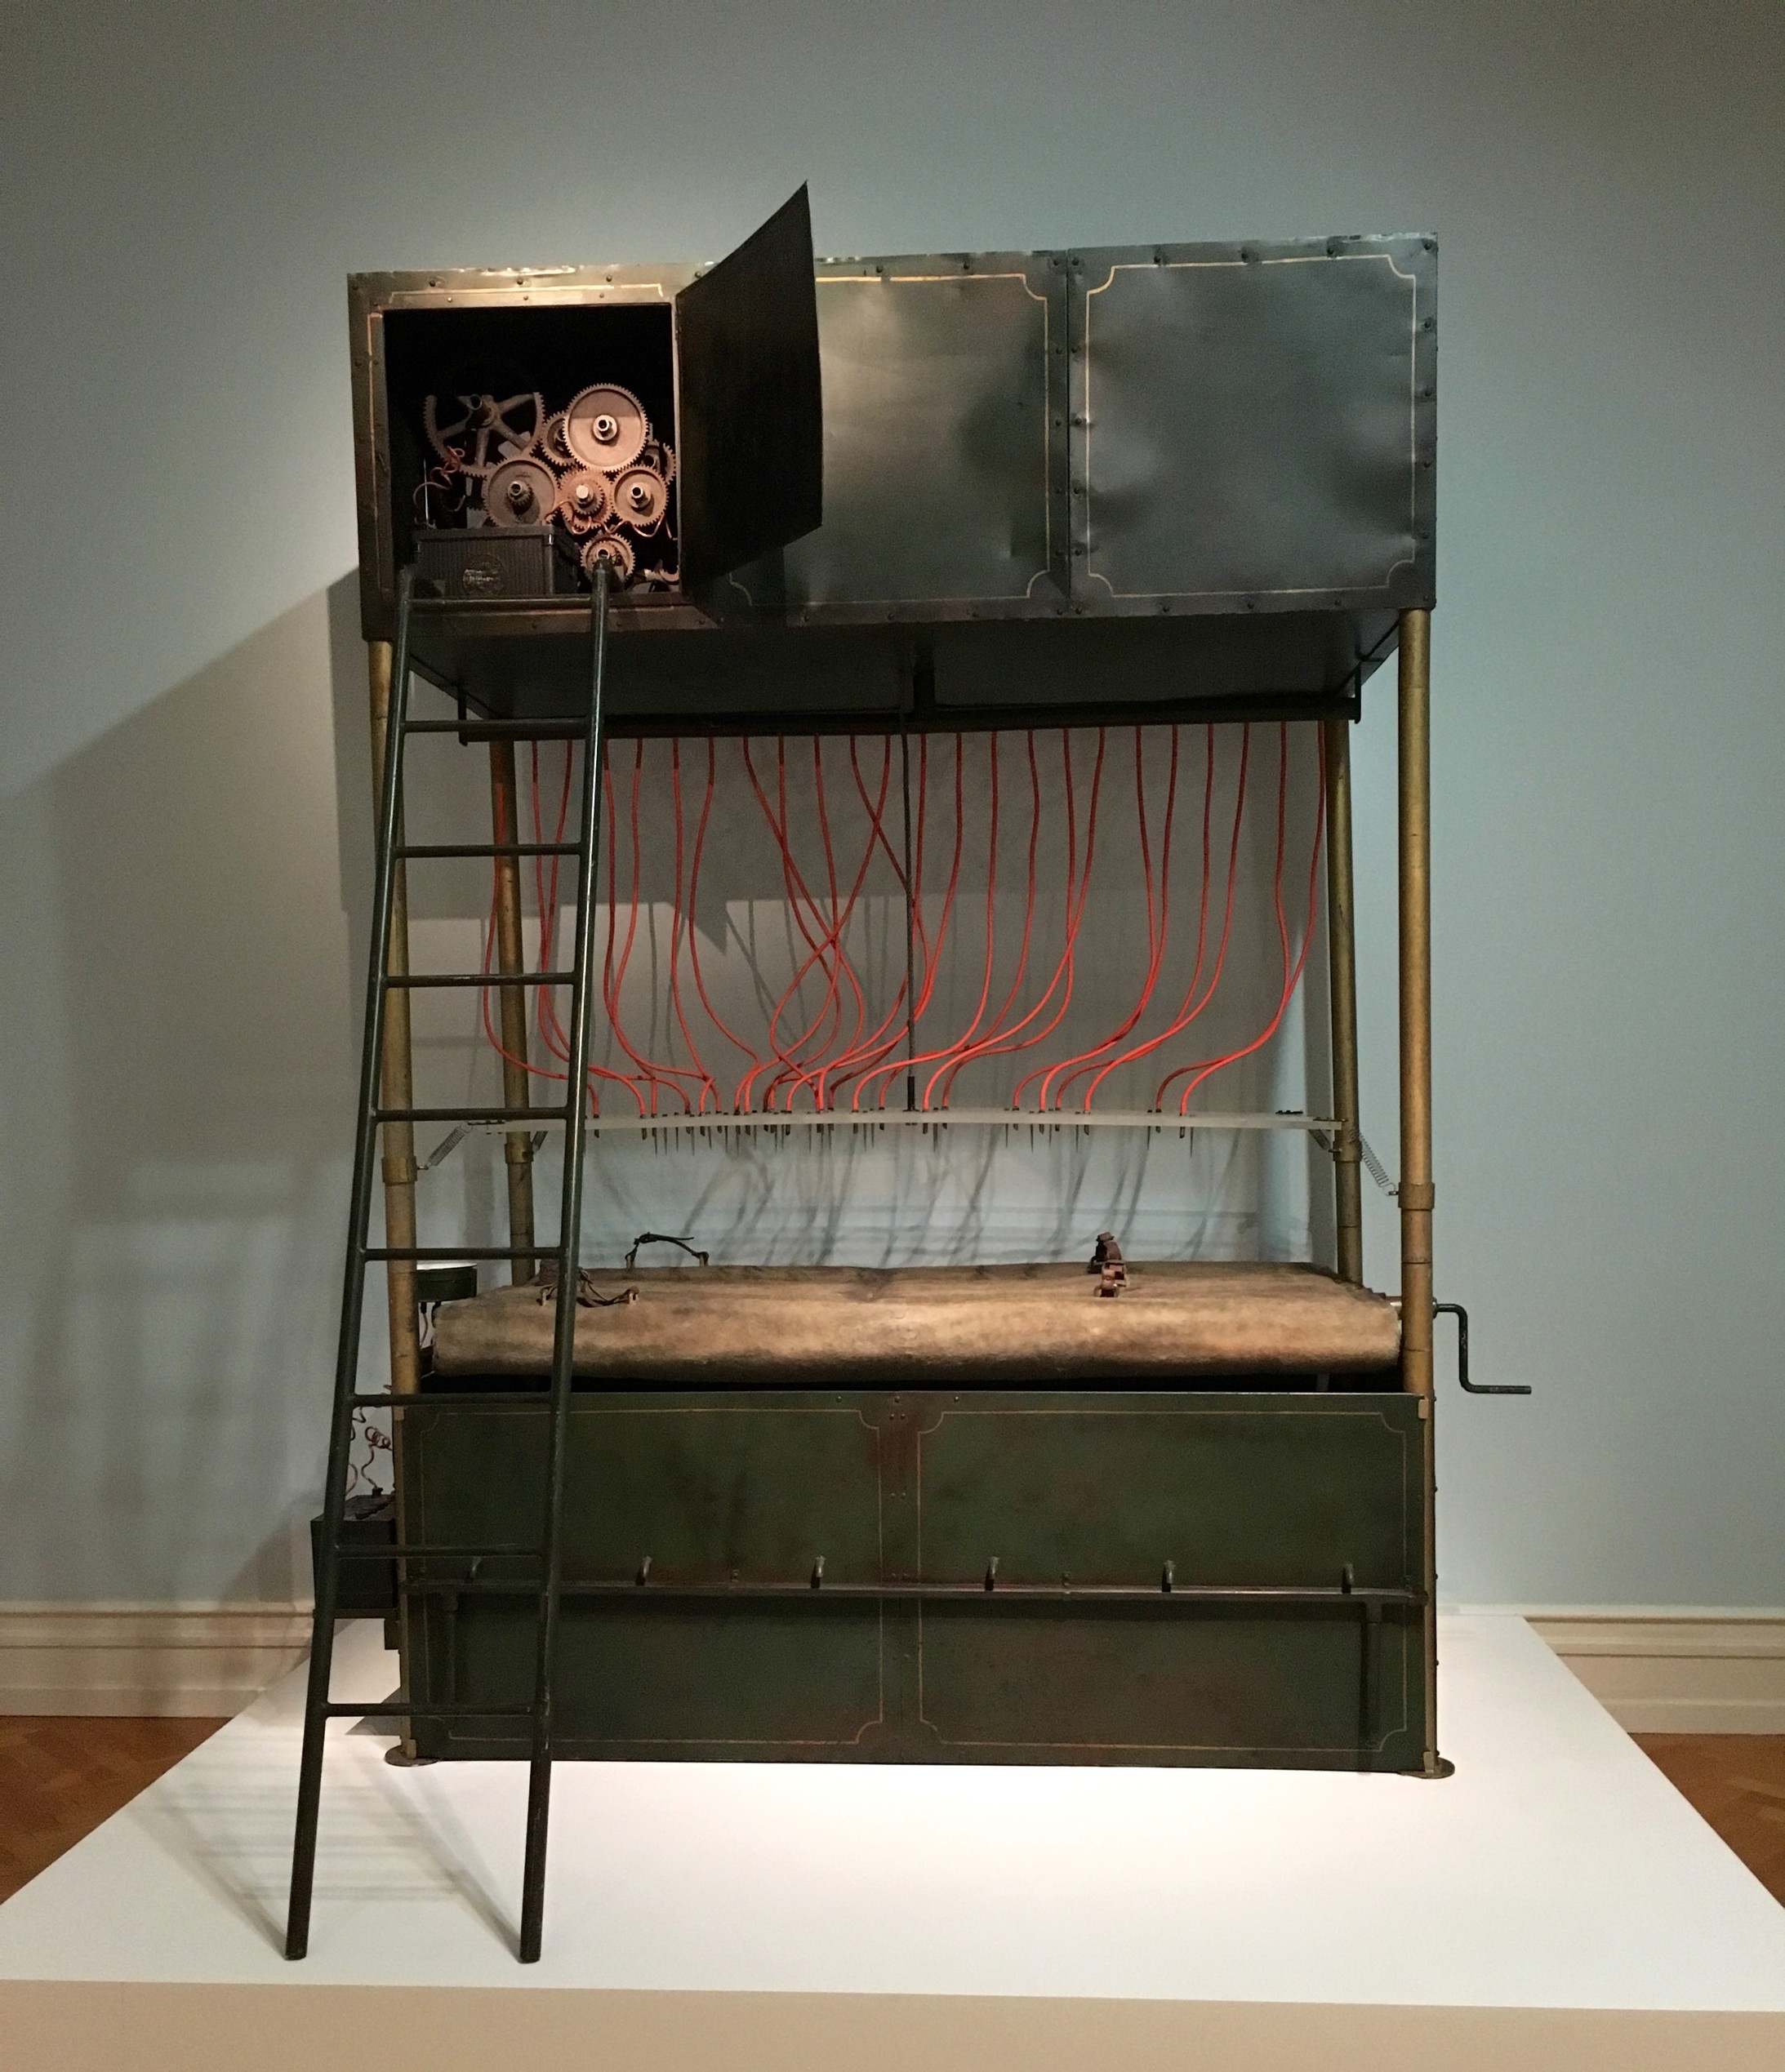 In der Erzählung „Die Strafkolonie“ schildert Franz Kafka eine brutale Hinrichtungsmaschine. 1975 liess Harald Szeemann diese Maschine nachbauen für seine Ausstellung „Junggesellenmaschinen“.